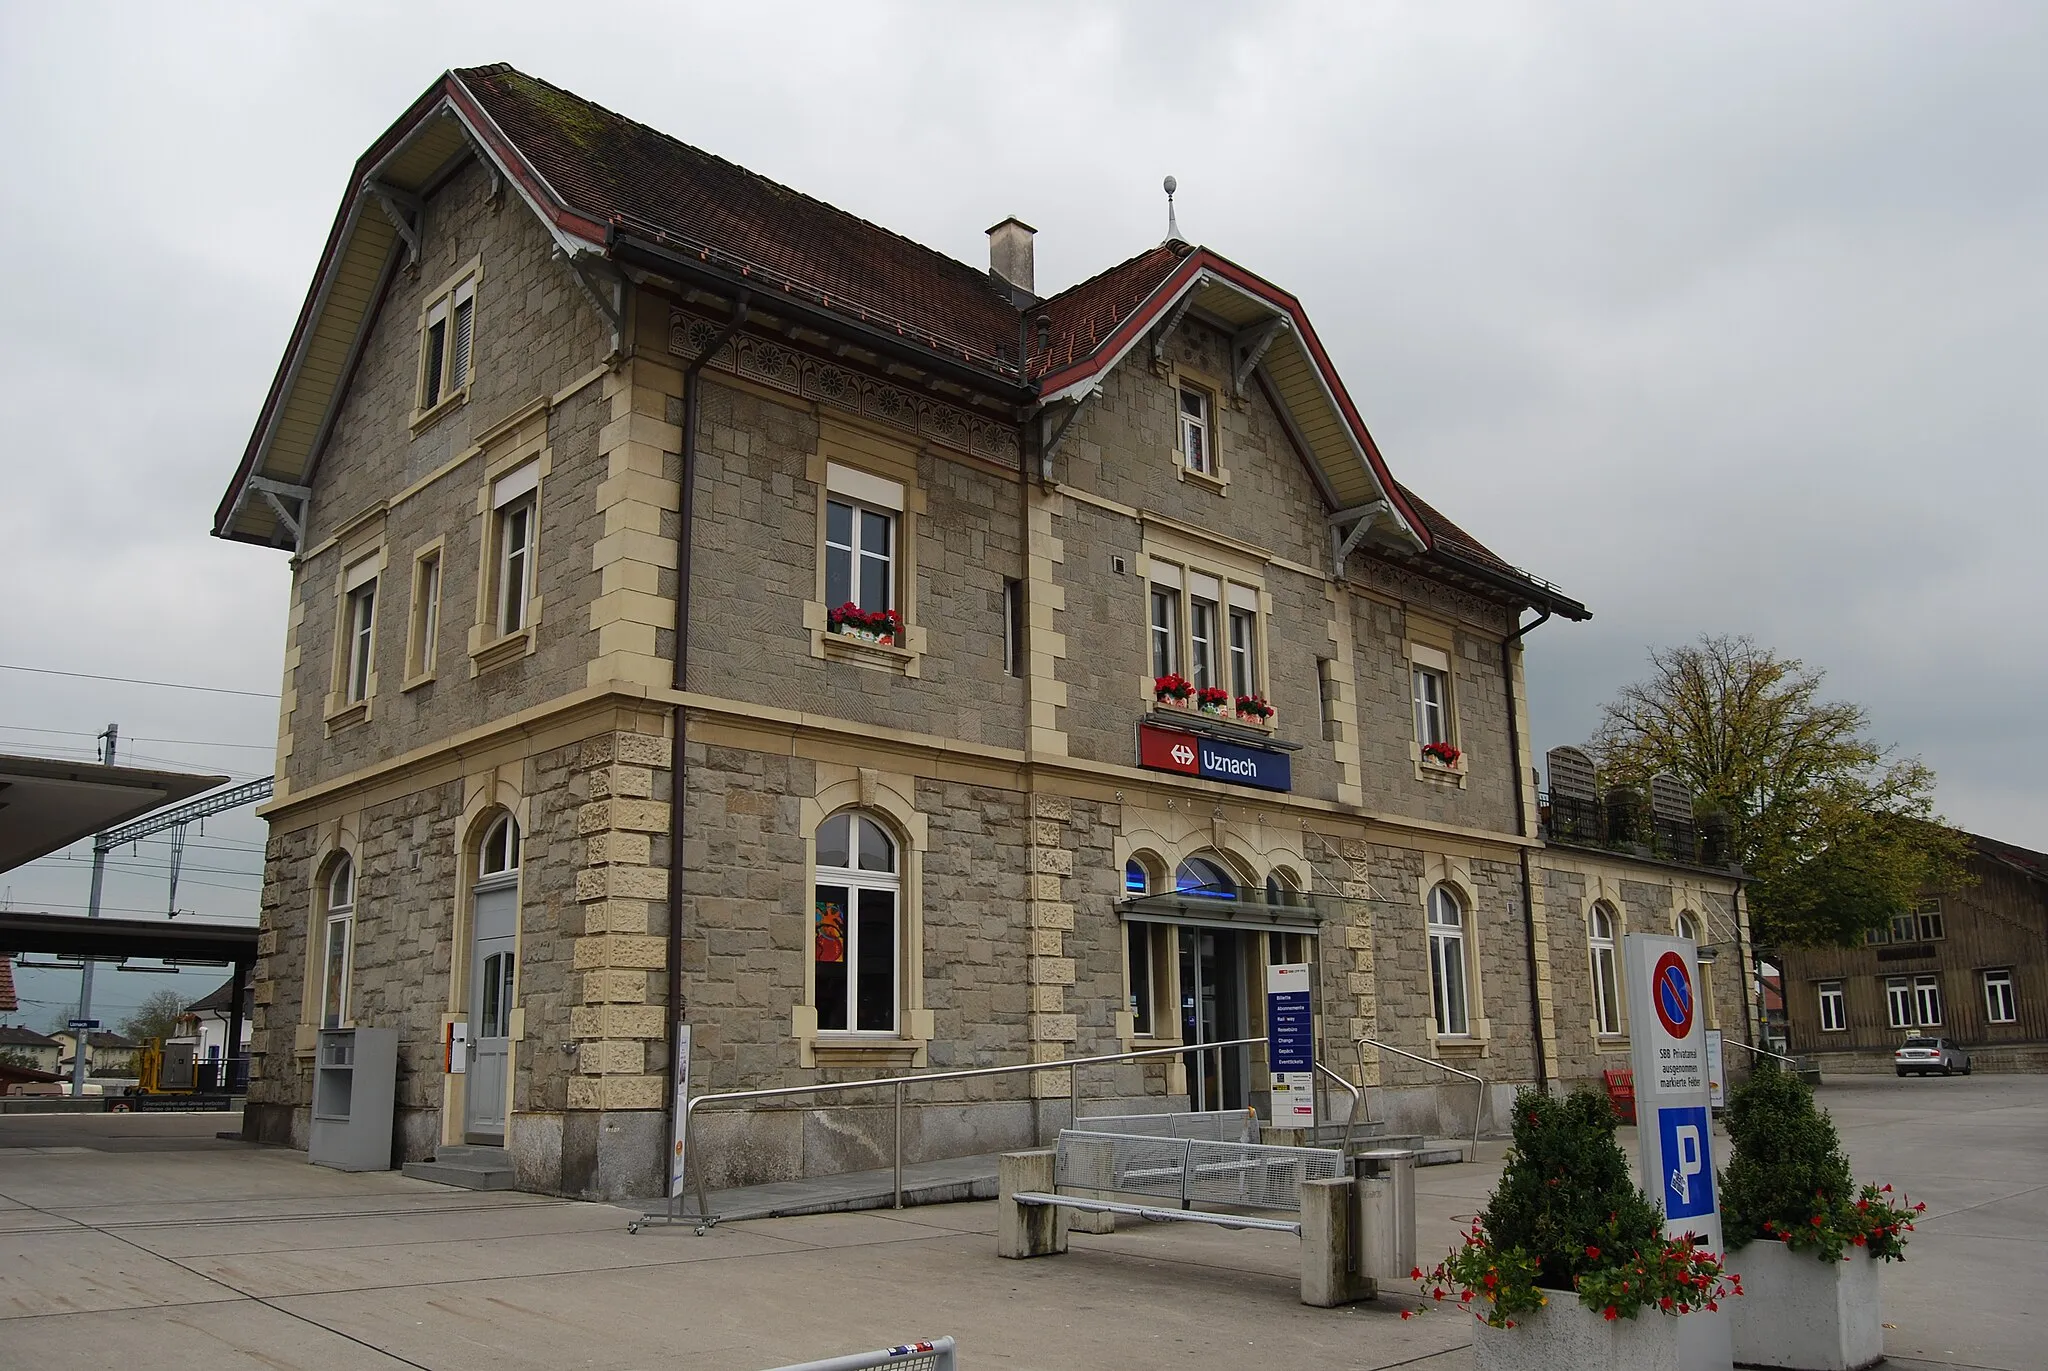 Photo showing: Train station of Uznach, canton of St. Gallen, Switzerland